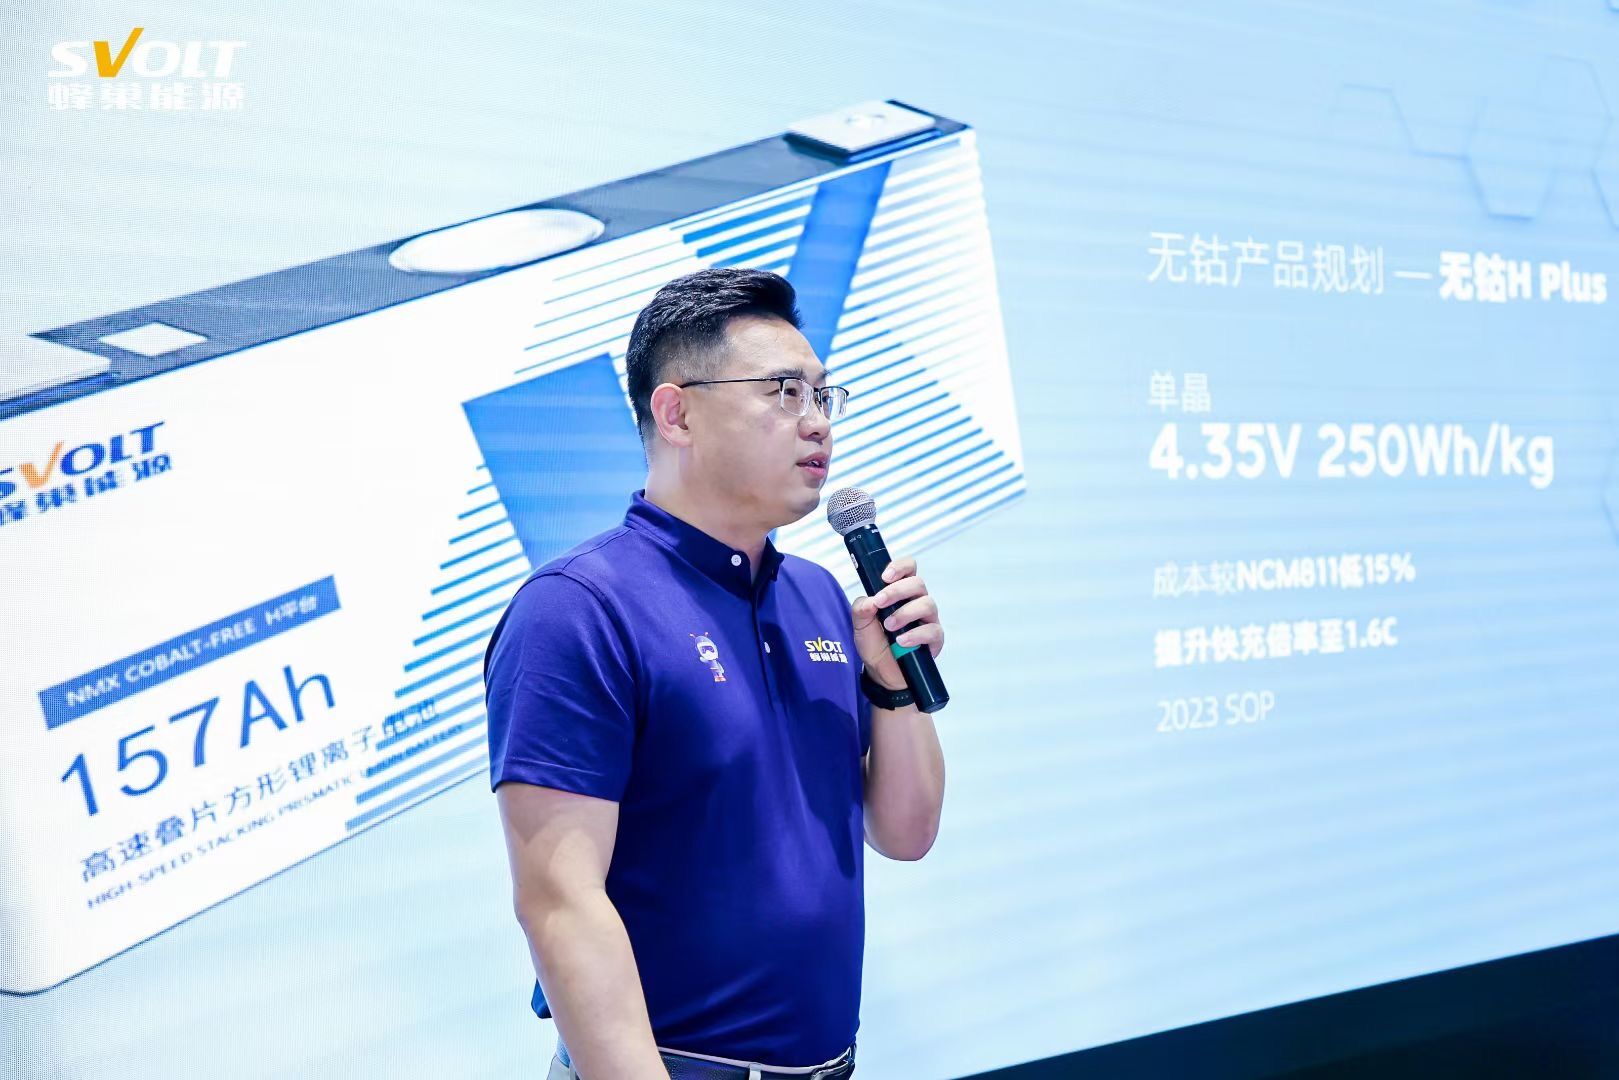 蜂巢能源董事长兼CEO、中关村新型电池技术创新联盟副理事长杨红新